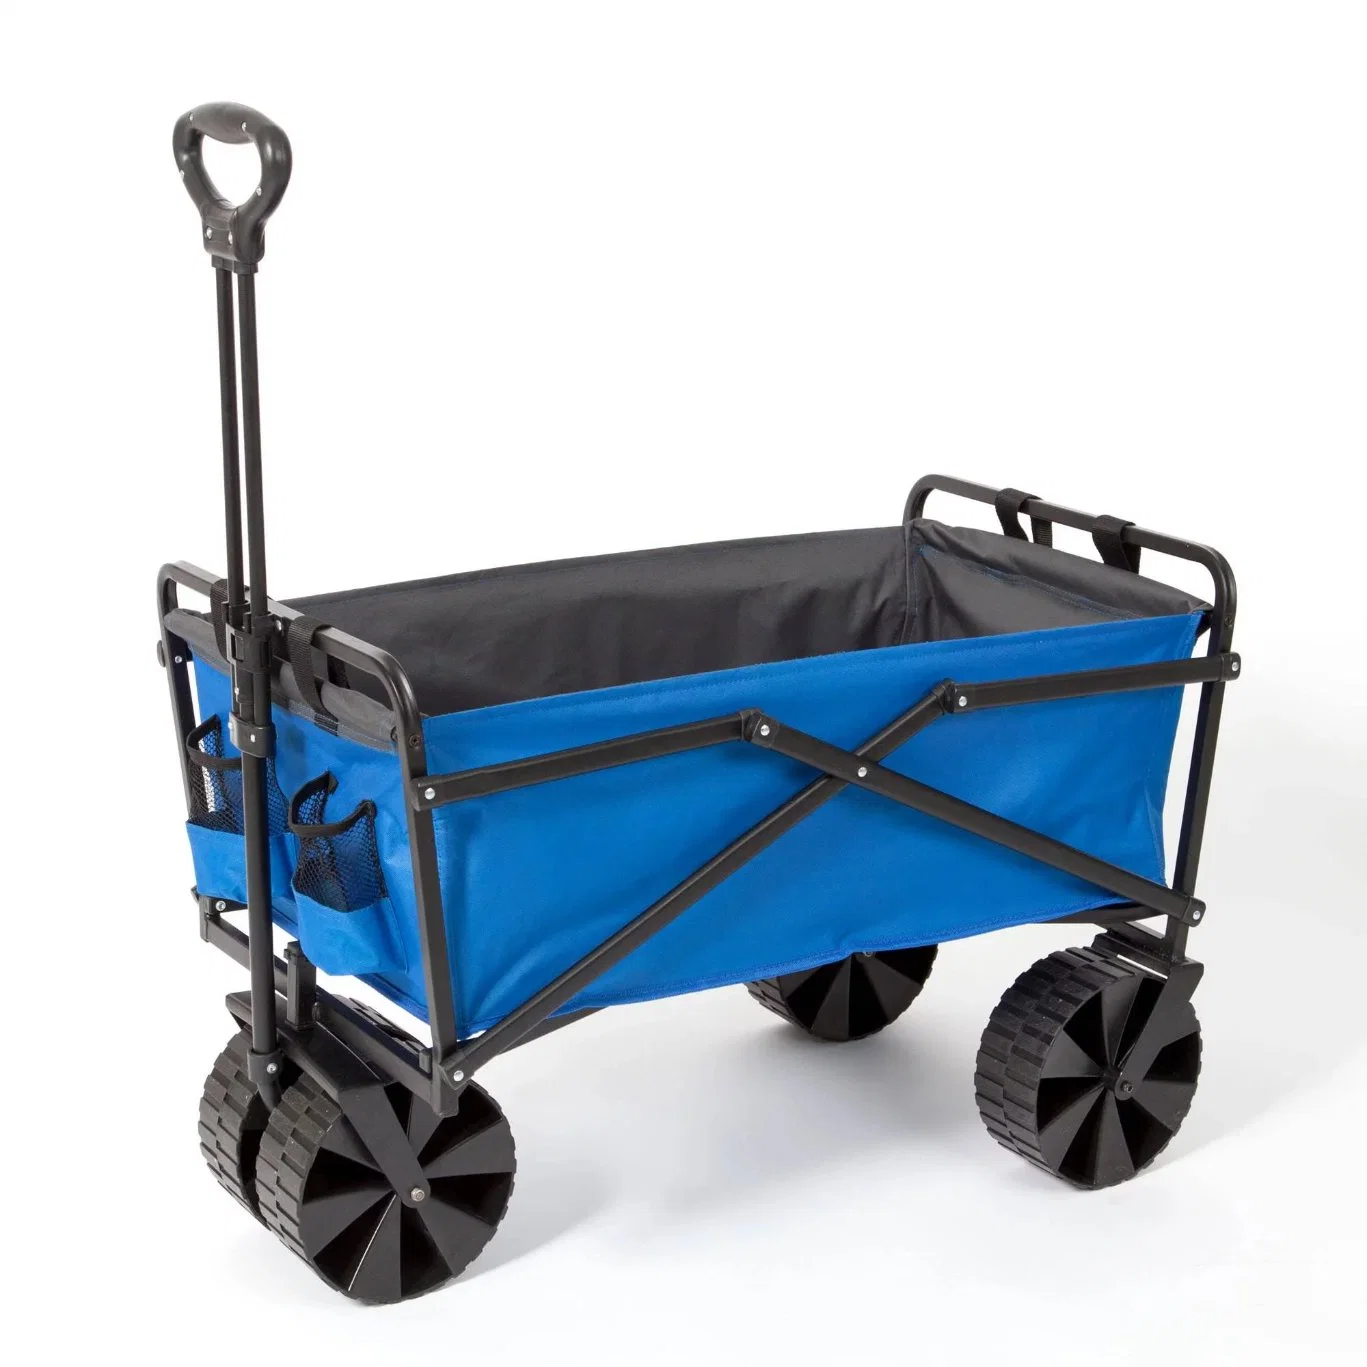 Carrinho de design novo carrinho de plástico carrinho de caixa inteligente dobrável para uso doméstico Carrinho